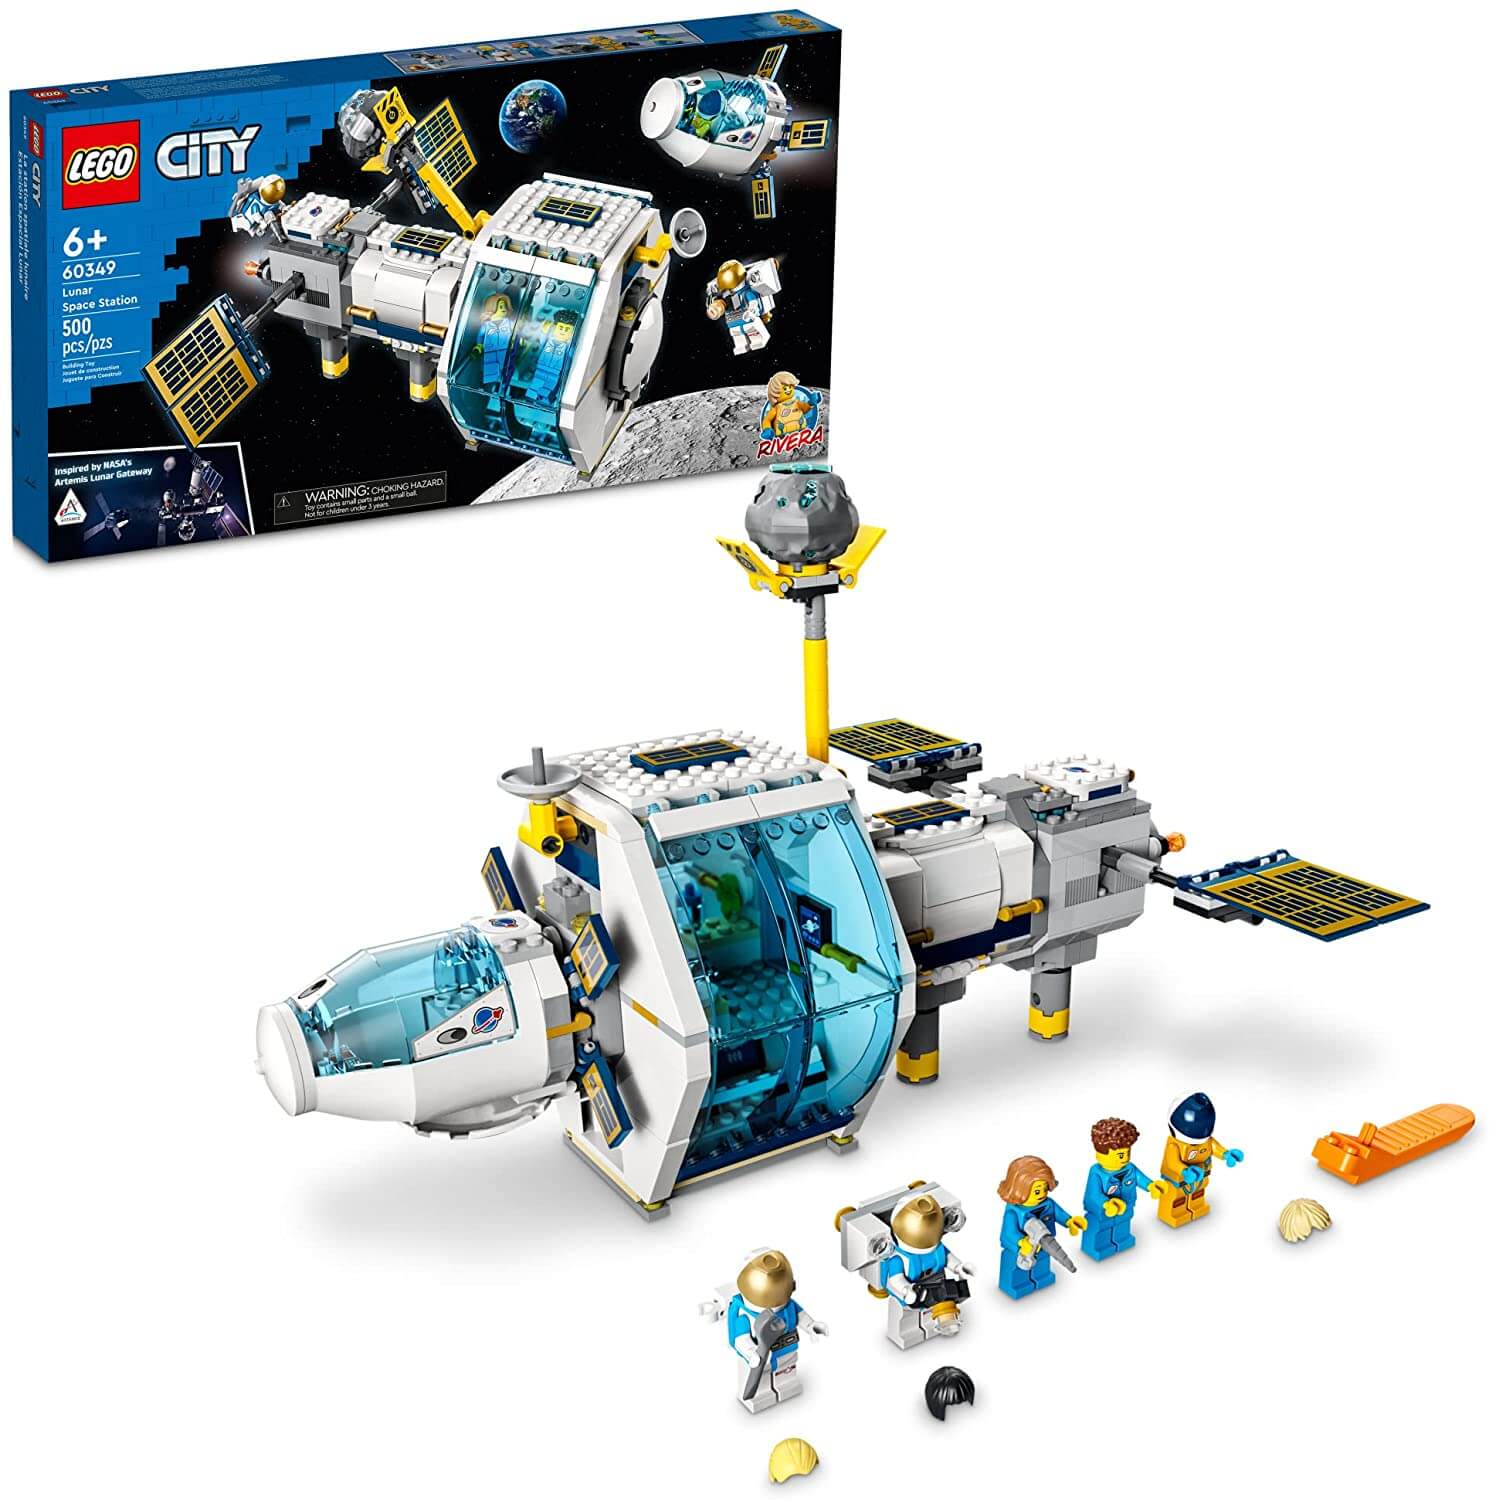 Конструктор LEGO City Space Port 60349 Лунная космическая станция набор с элементами конструктора playmobil city life 6425 зоопарк станция заботы